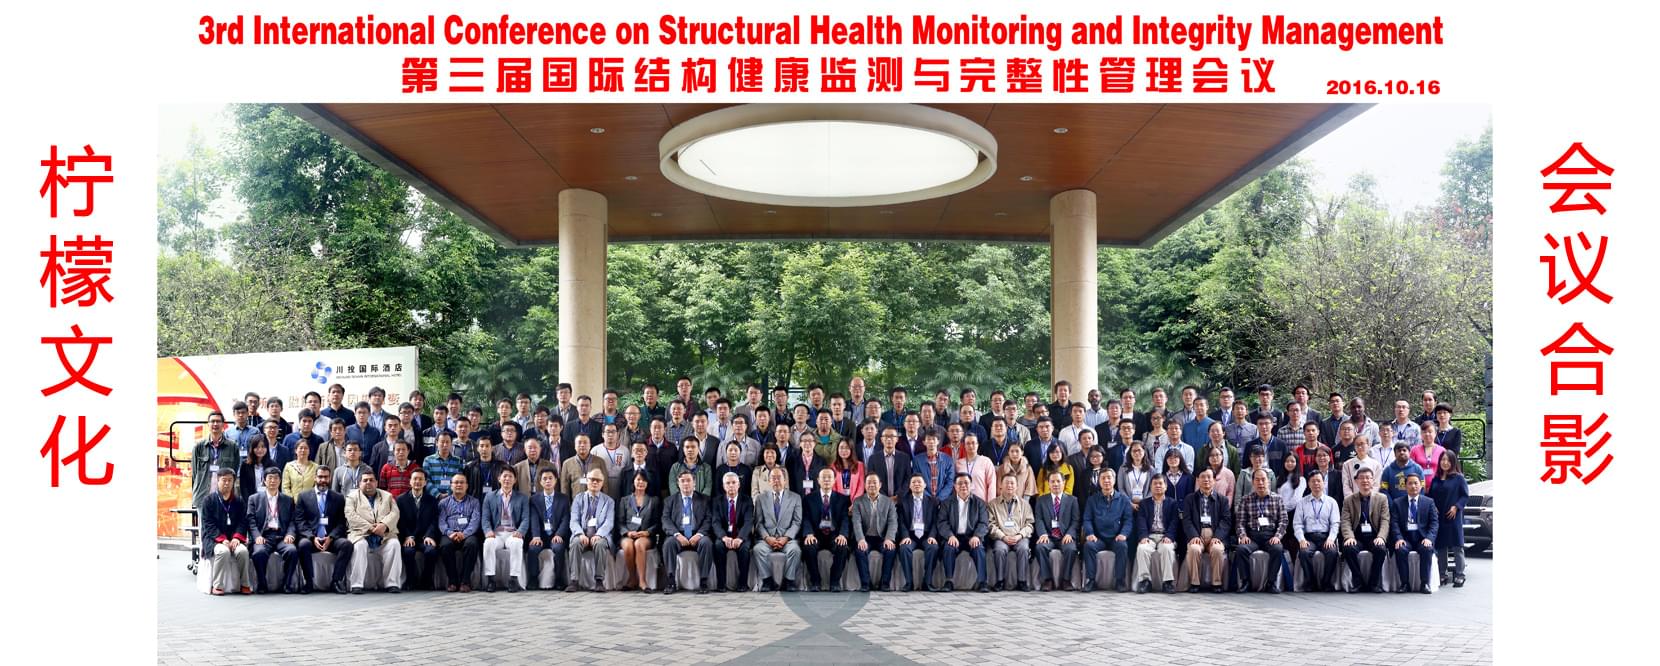 第三届国际结构健康监测与完整性管理会议合影